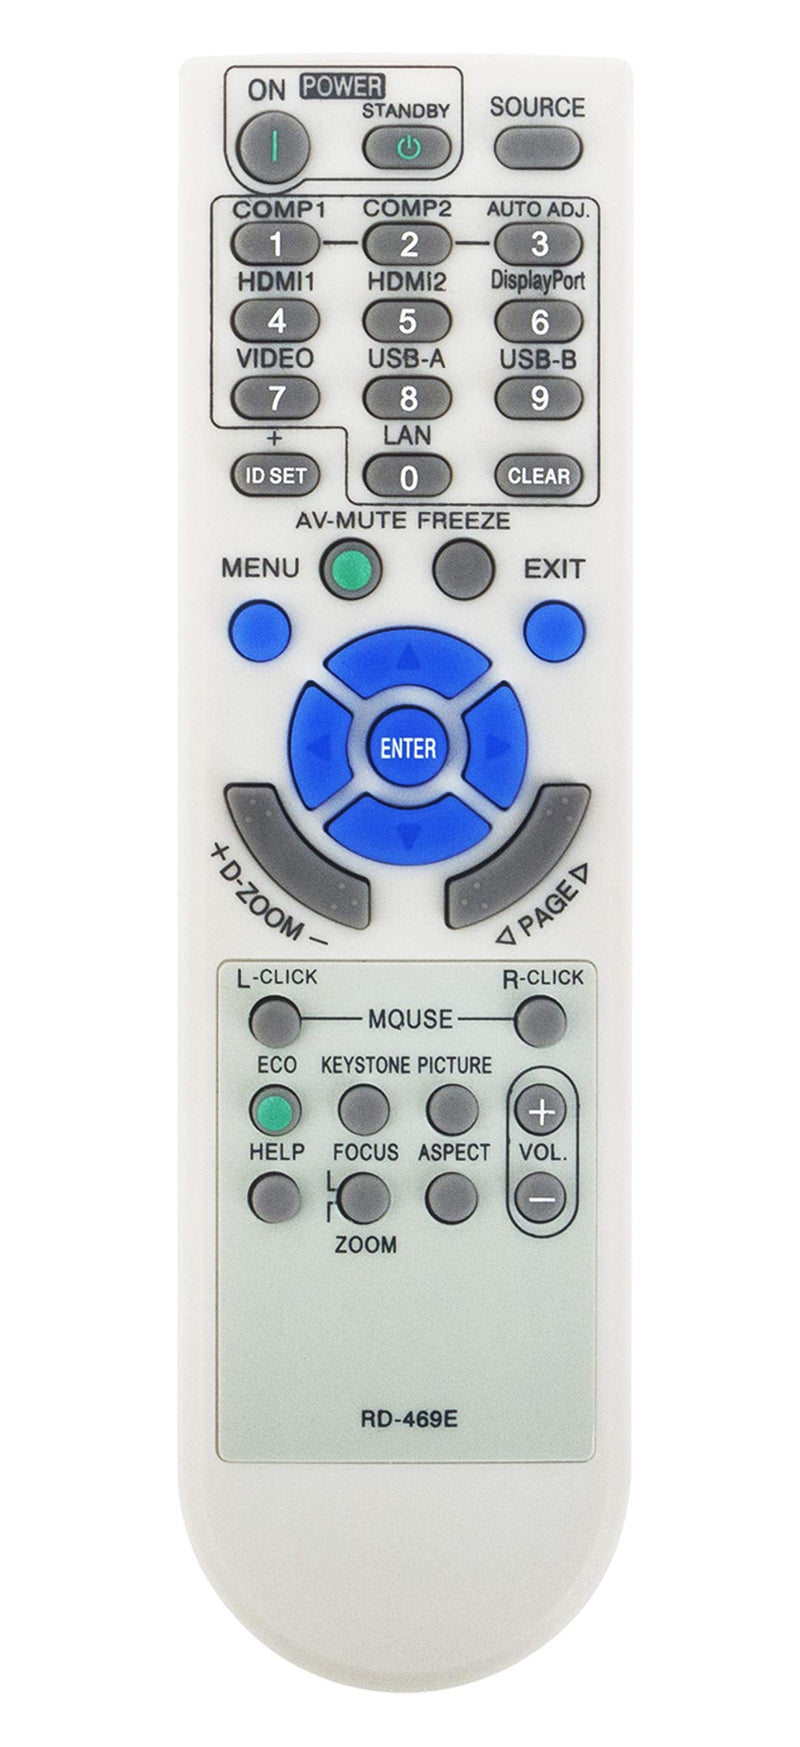 [Australia - AusPower] - RD-469E Replaced Remote fit for NEC Projector VE303 VE303X V302X V302W V332X V332W V302H UM351W UM301W UM361X UM301X U321H 